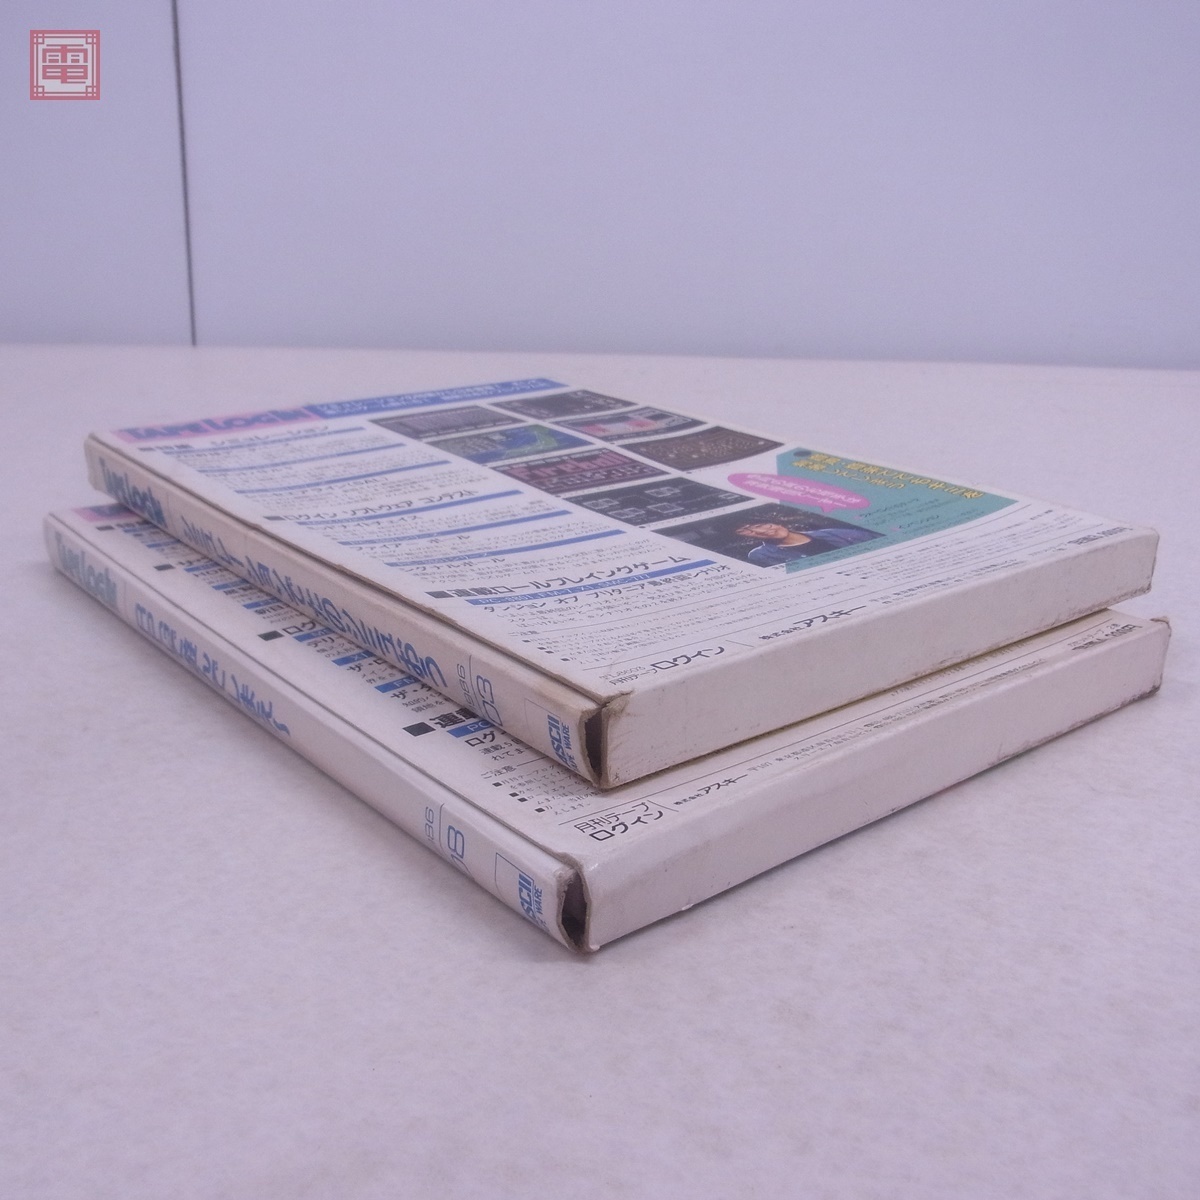 月刊テープログイン TAPE LOGIN 1986年 3/8月号 計2冊セット TL8603/8608 ASCII アスキー TAPE WARE【10